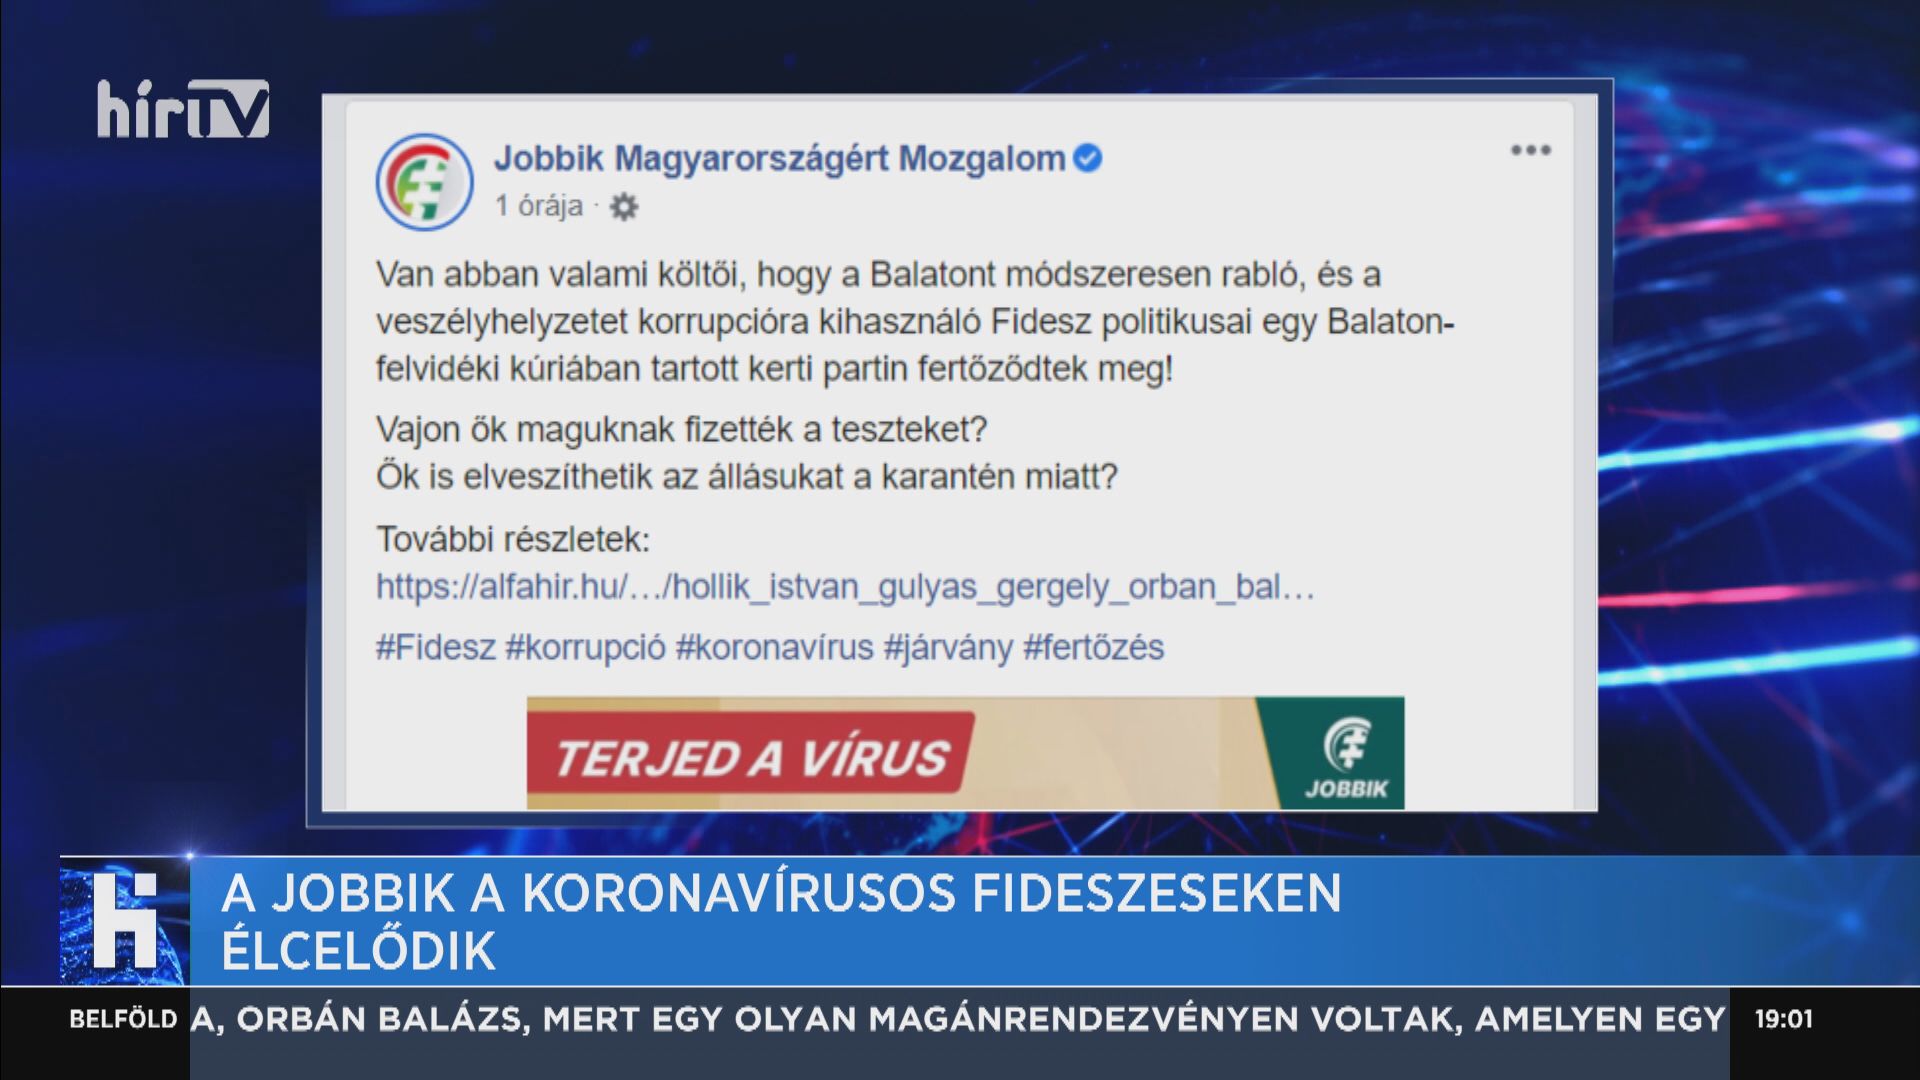 A Jobbik a koronavírusos fideszeseken élcelődik